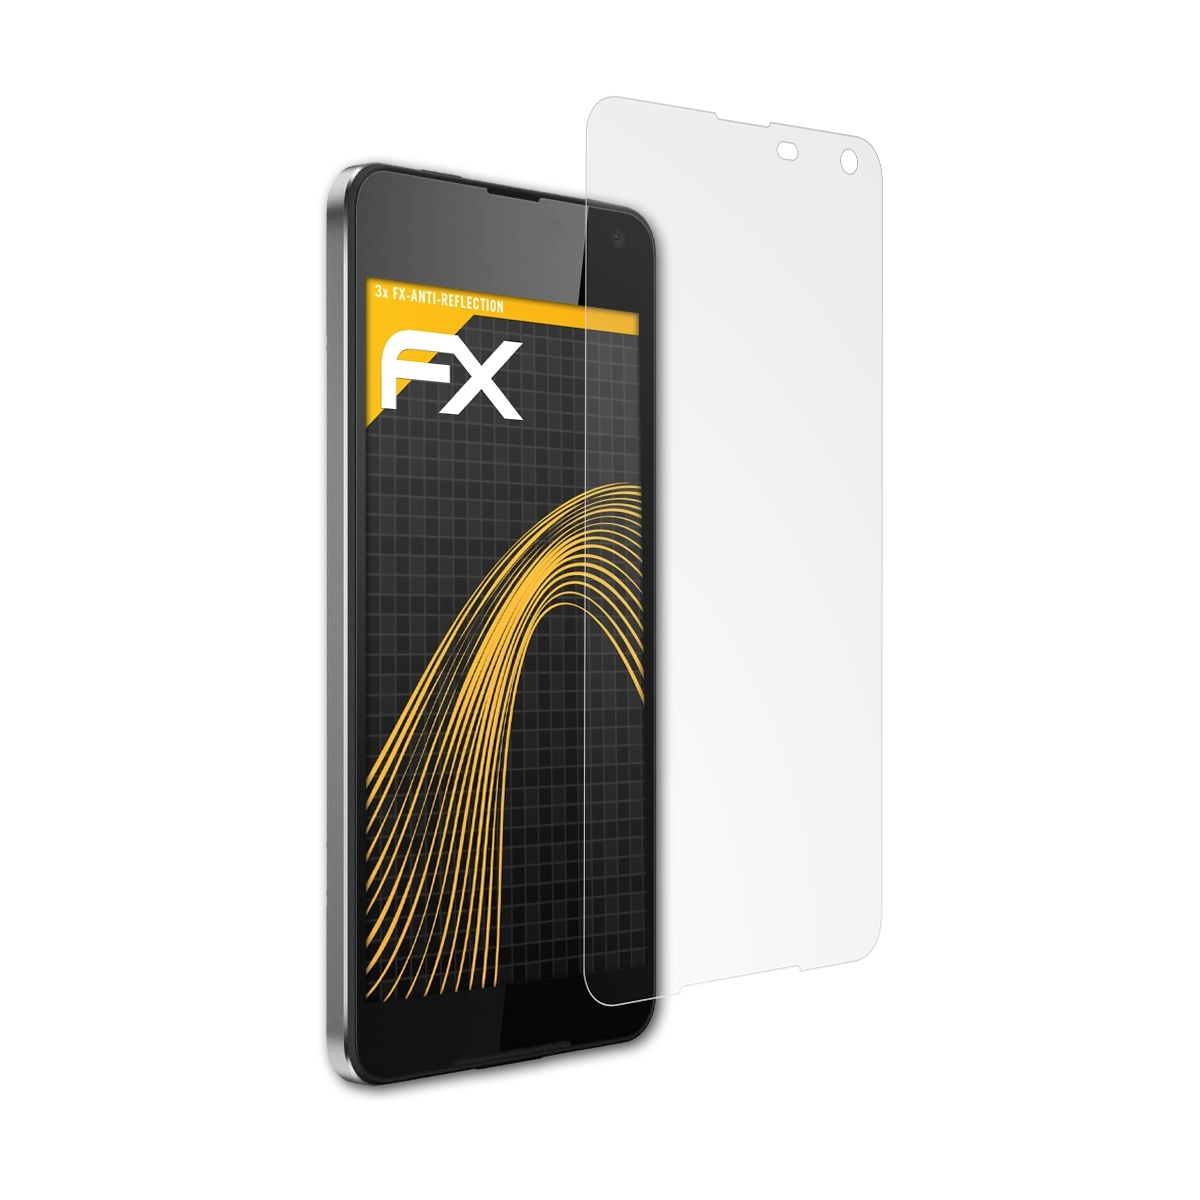 Microsoft FX-Antireflex Displayschutz(für 3x Lumia ATFOLIX 650)